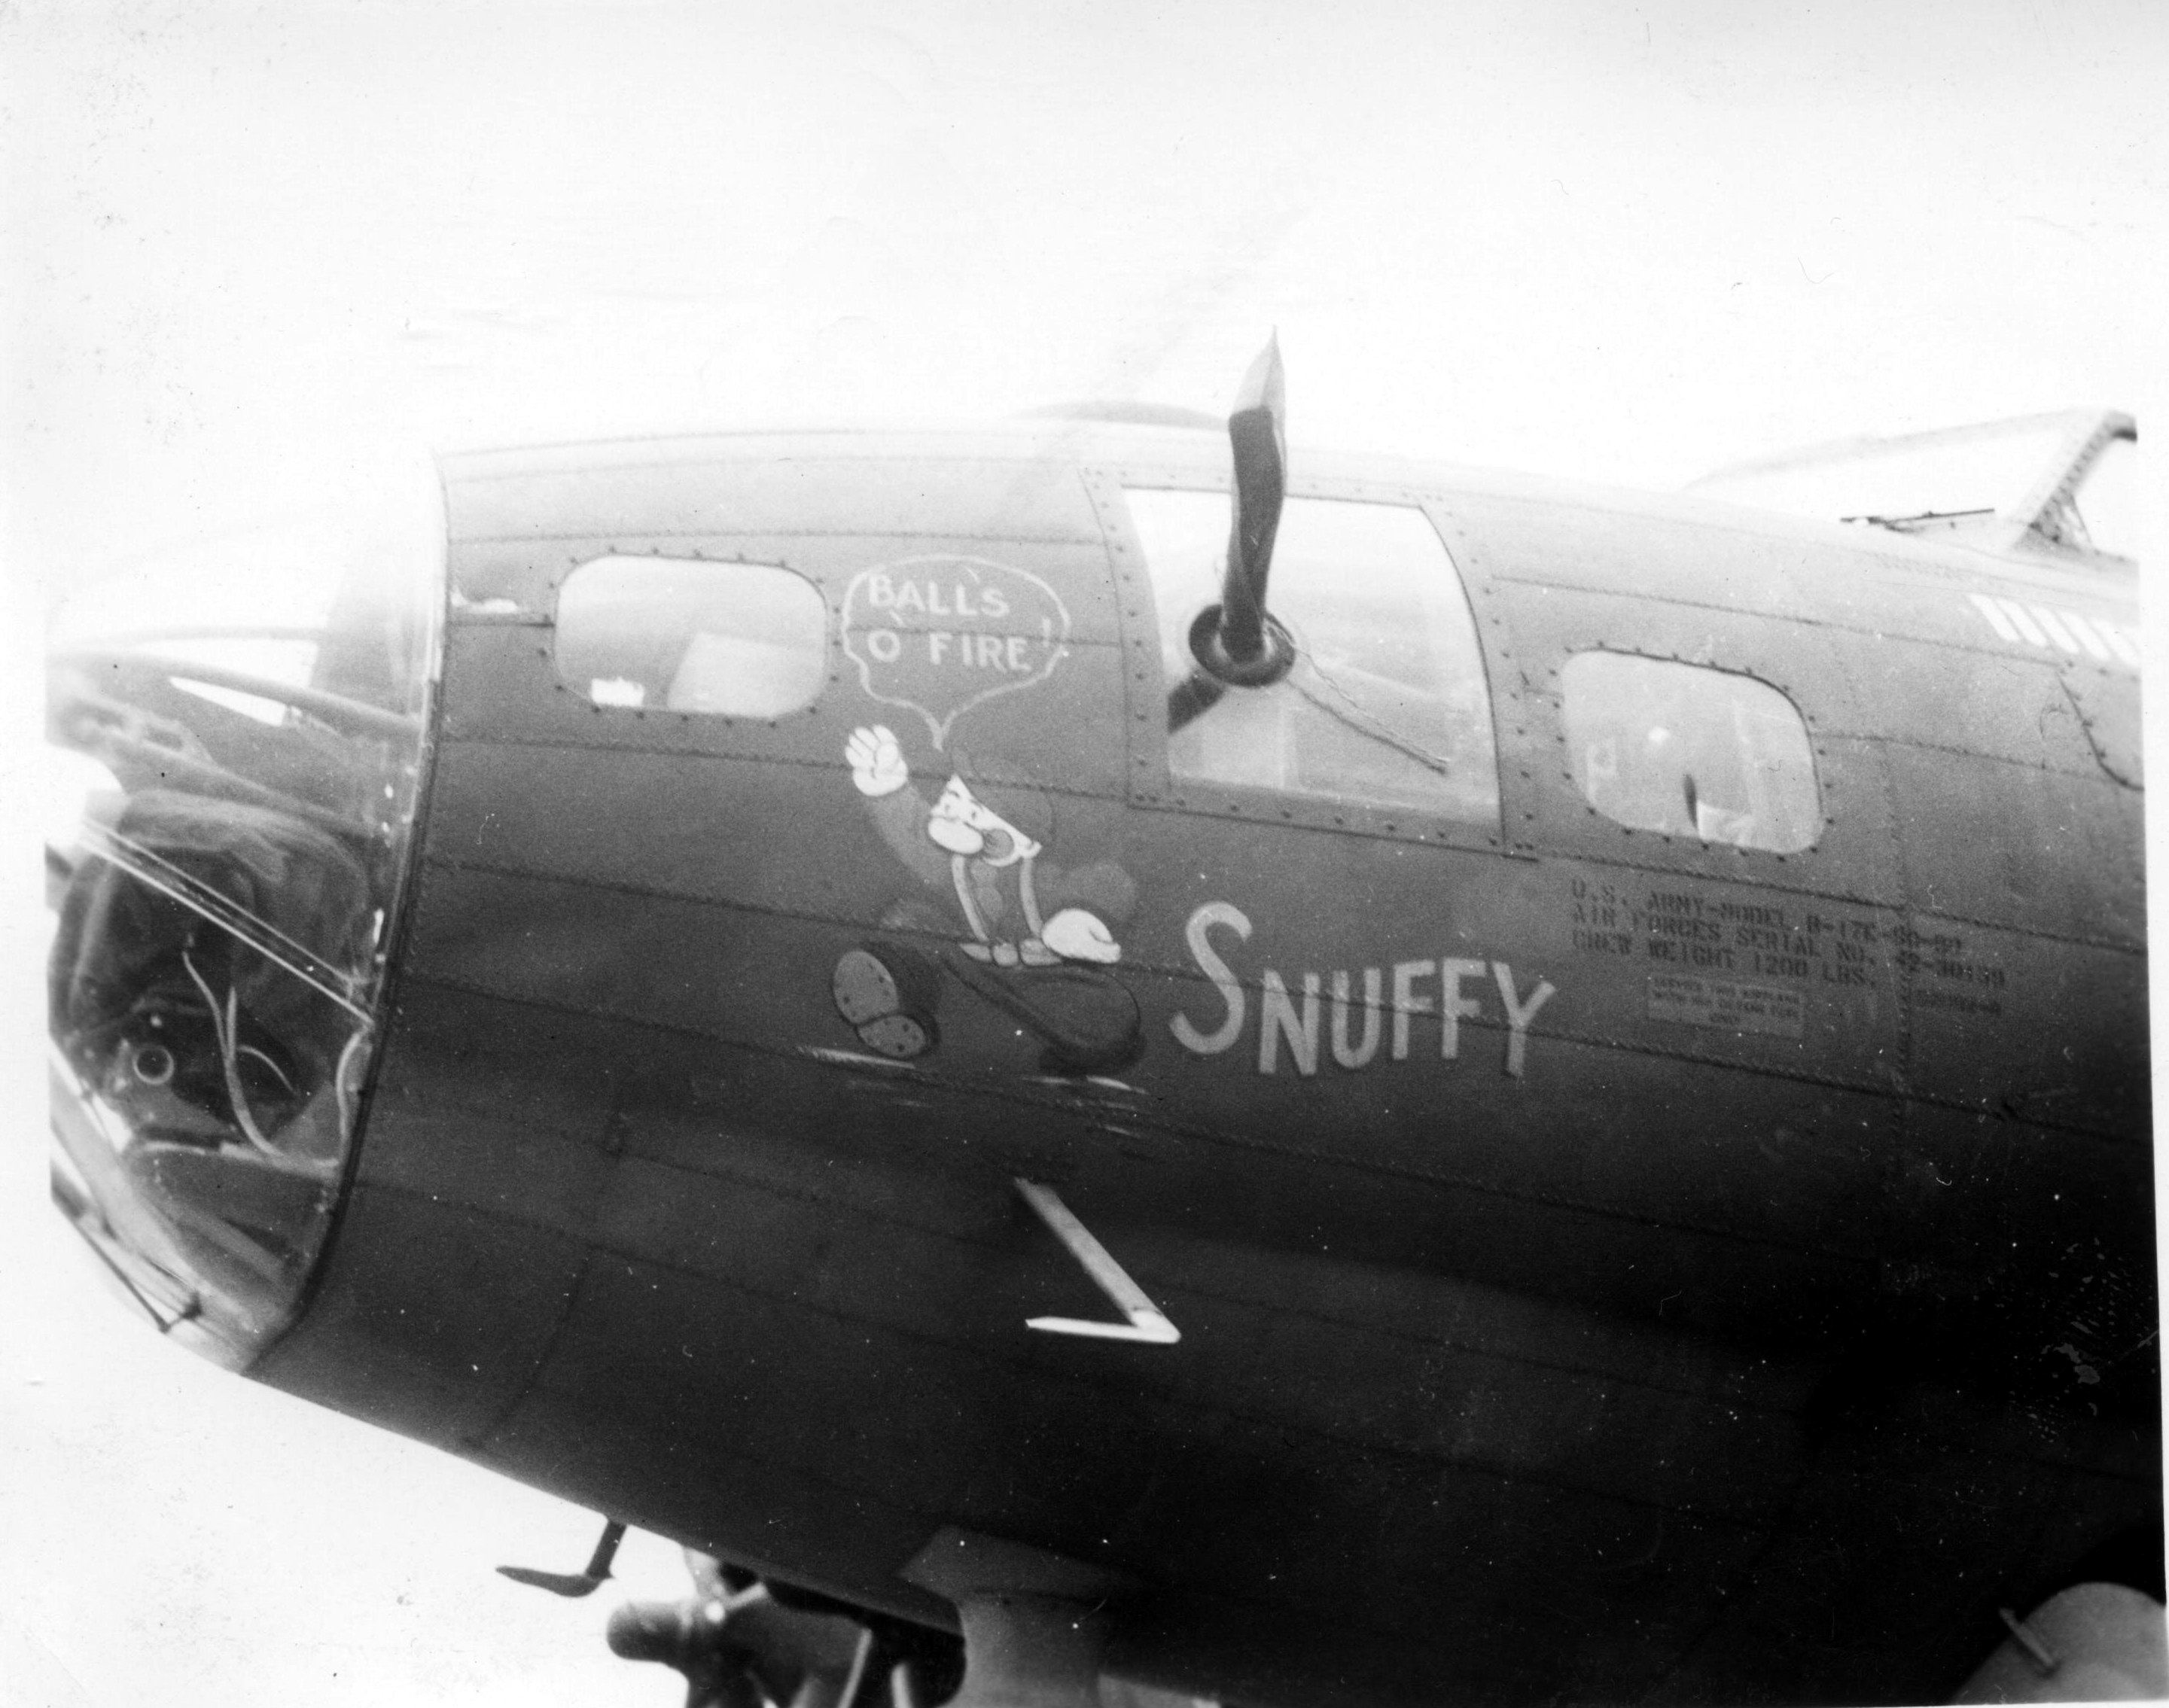 B-17 #42-30139 / Snuffy